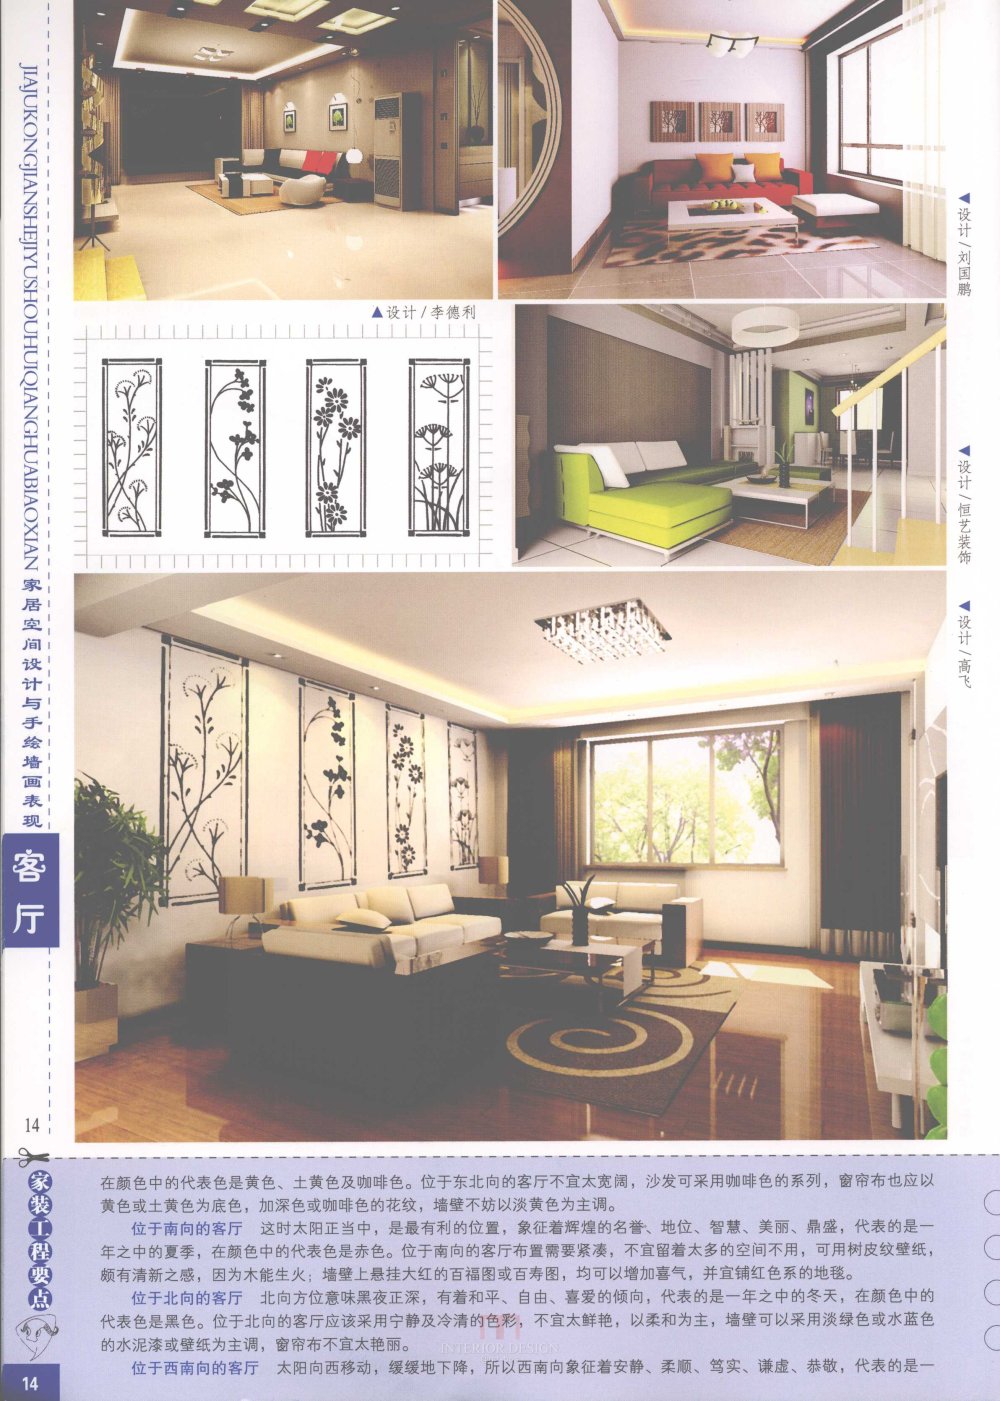 家居空间设计与手绘墙画表现客厅_家居空间设计与手绘墙画表现客厅-16.jpg